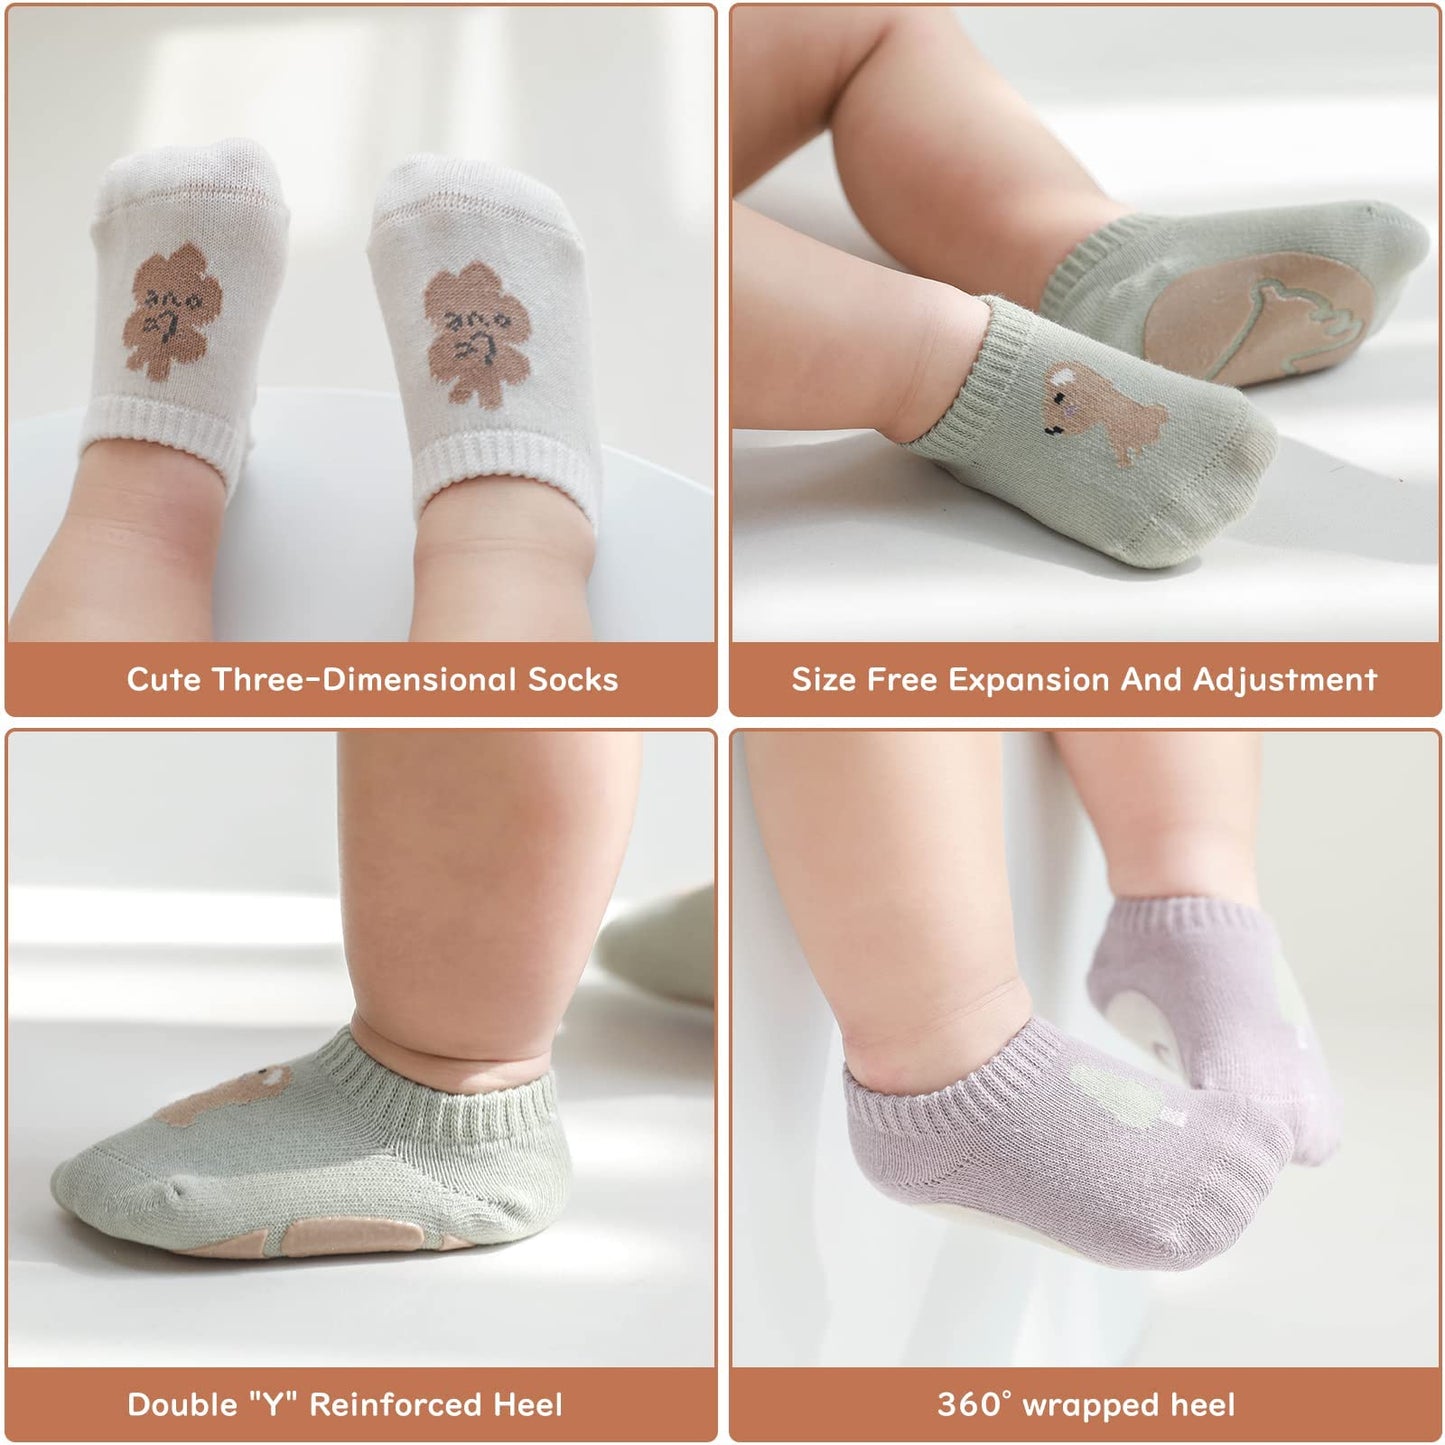 Toddler Baby Non Slip Socks, Azonee 5 Pairs Anti Slip Cozy Kids Socks for 1-3 years old Toddler Little Kids